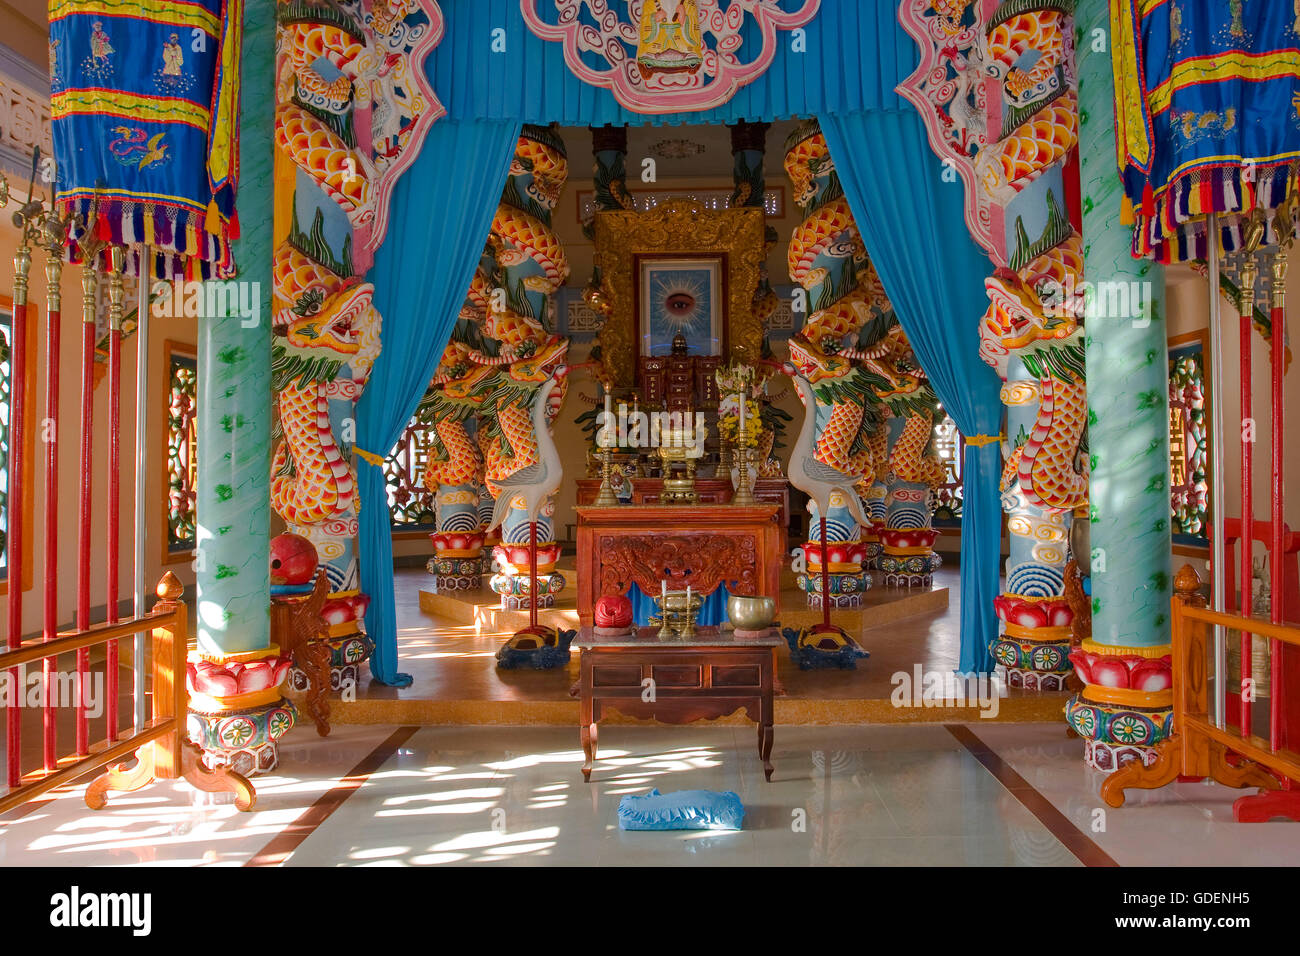 Pagoda, Cao Dai temple, Tay Ninh, Vietnam Foto Stock